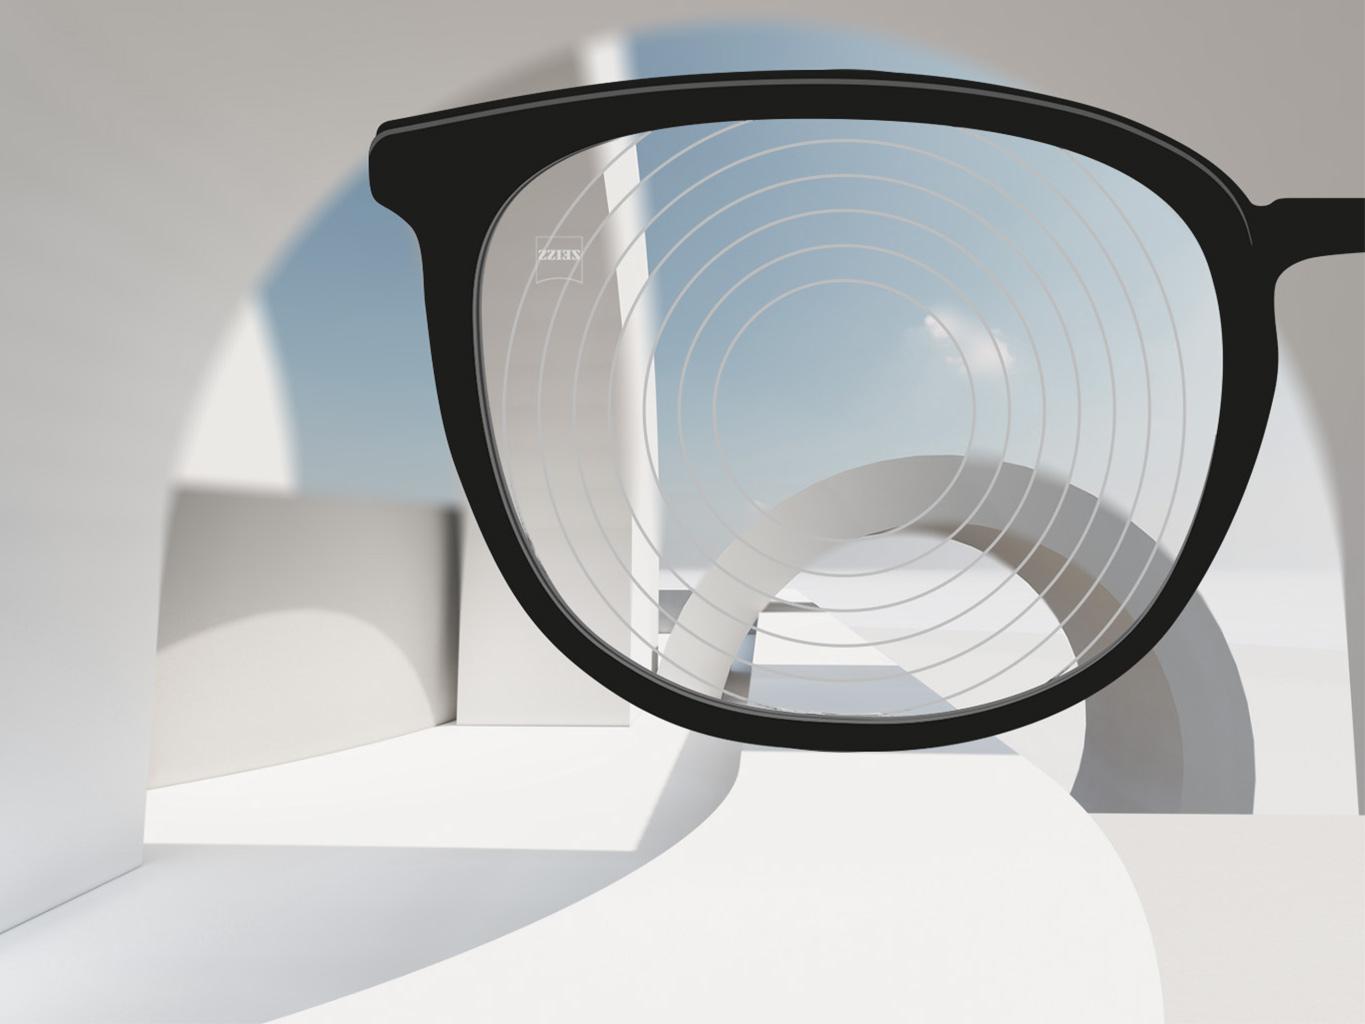 자이스 근시 관리 렌즈의 클로즈업 이미지, 안경테는 검은색이고 렌즈 표면에 동심원이 그려져 있다.